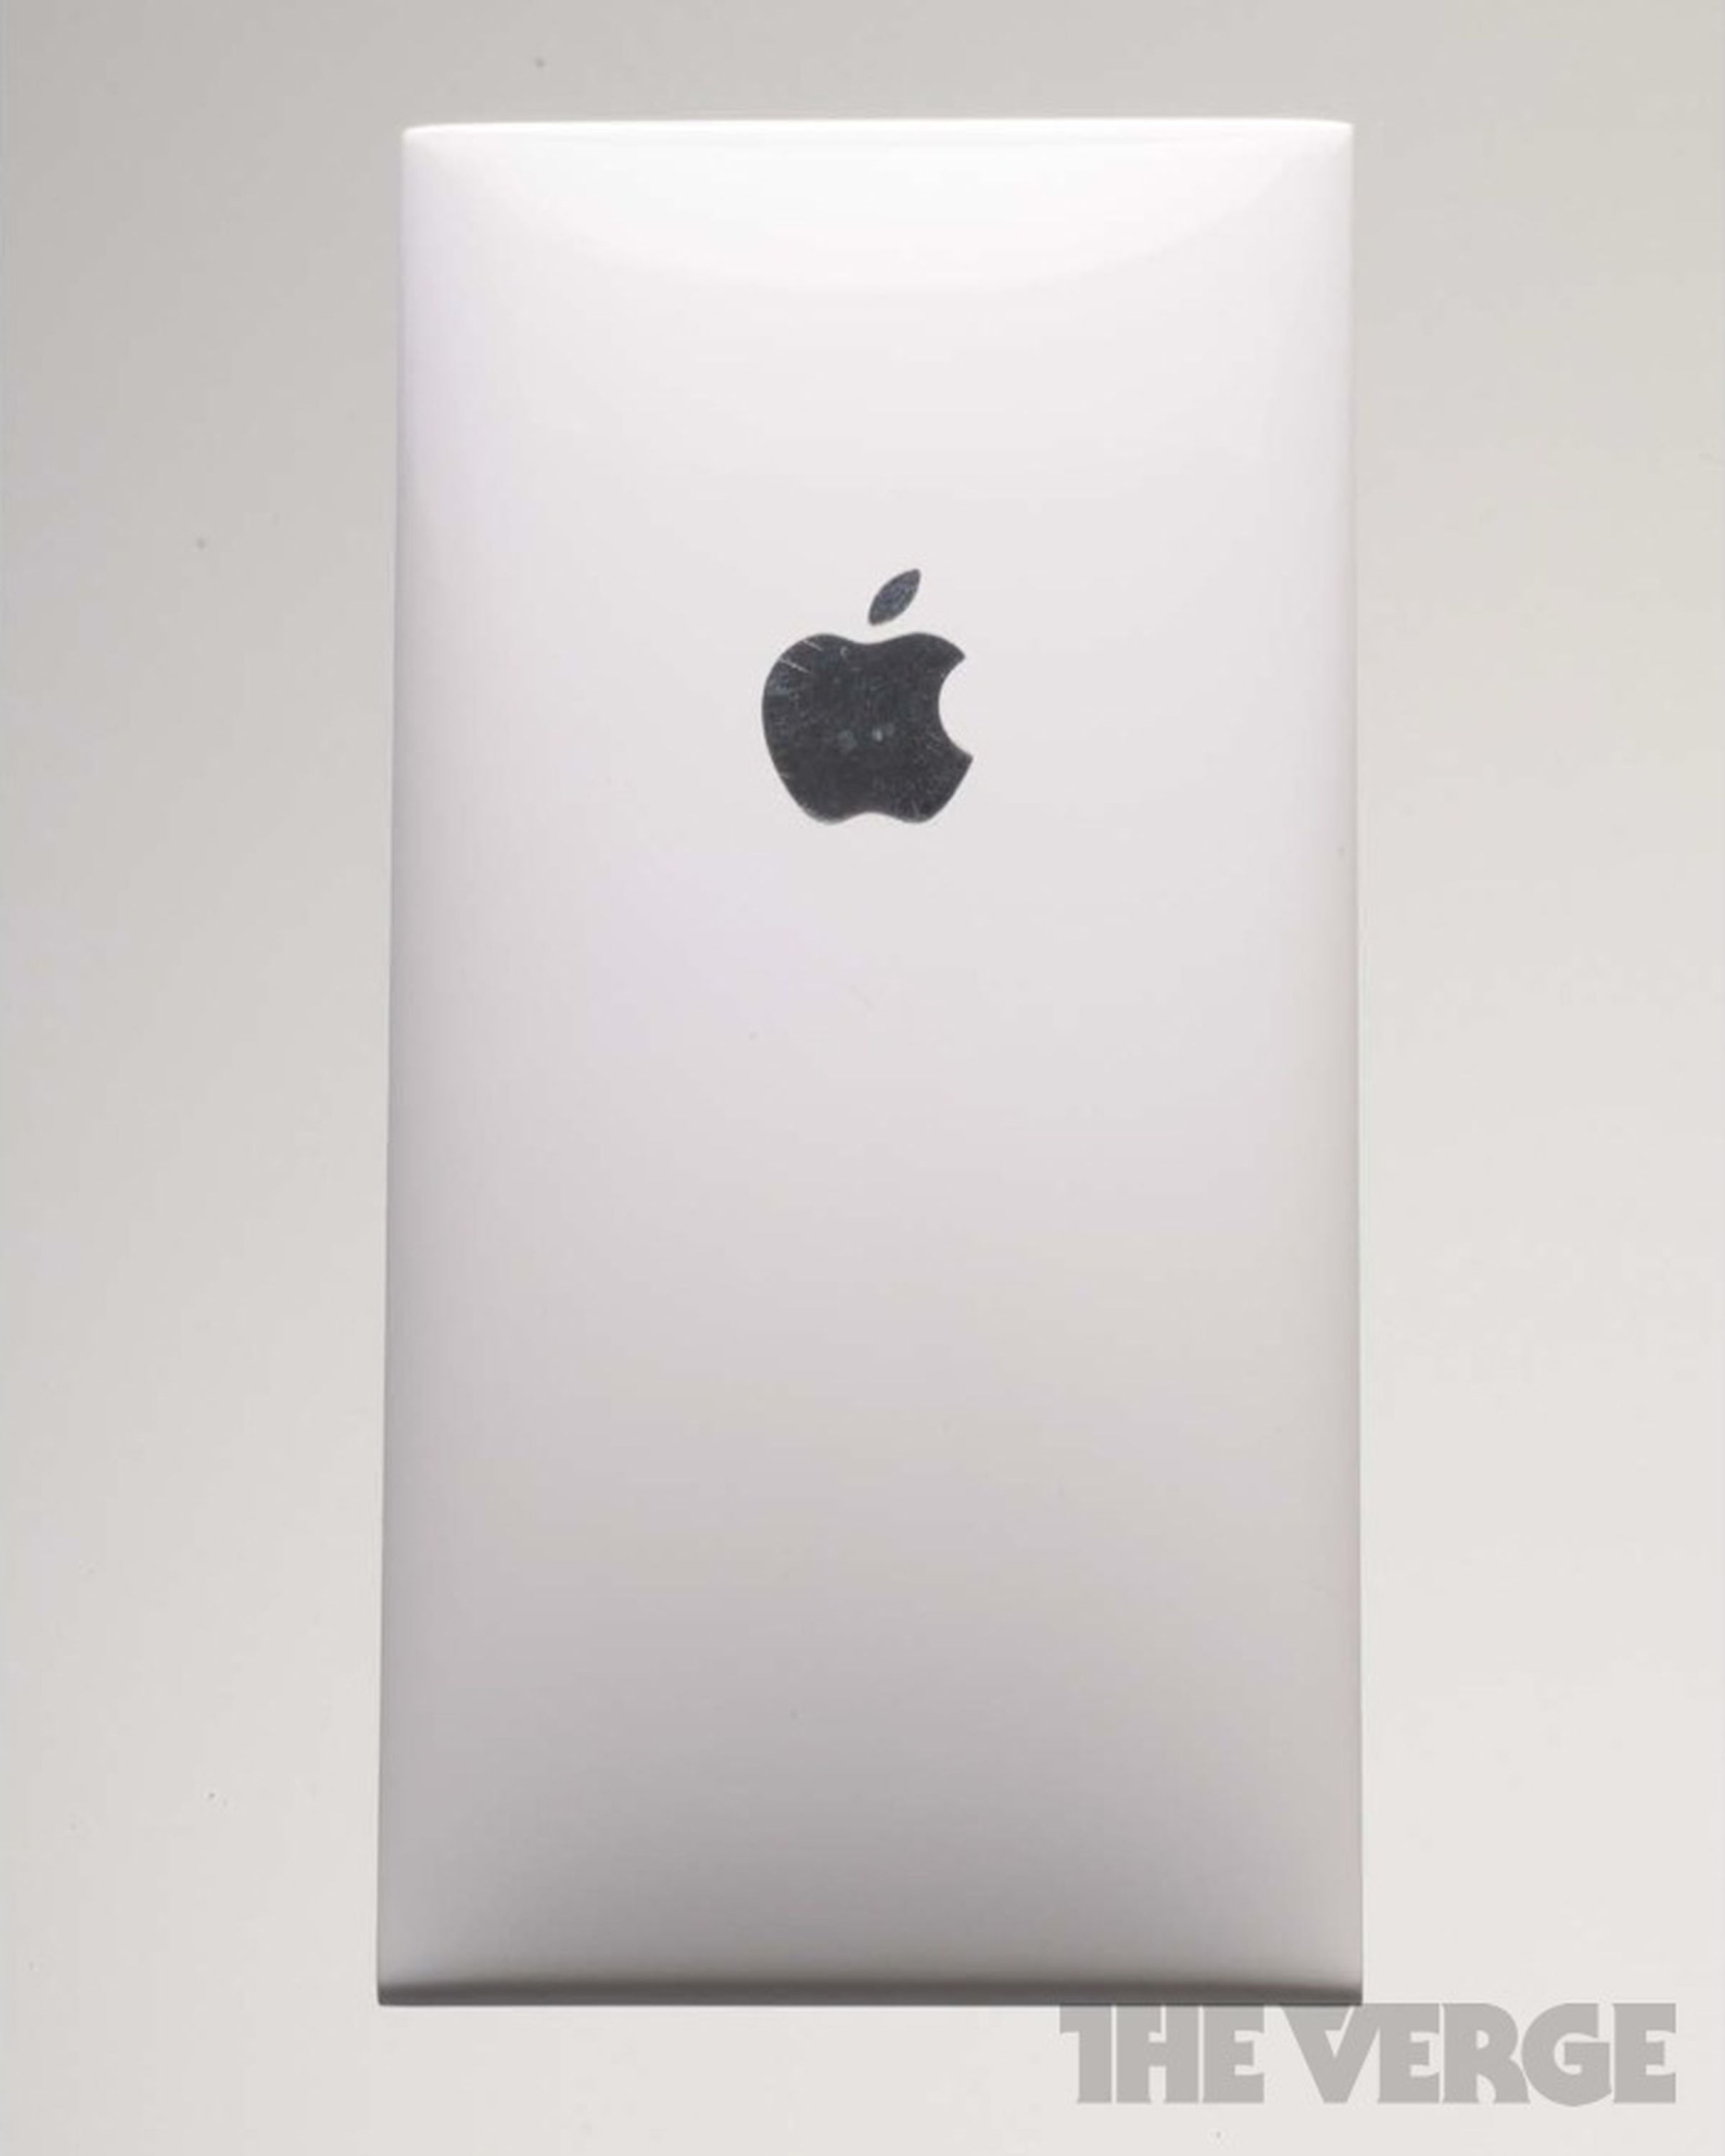 Apple iPhone prototype photos